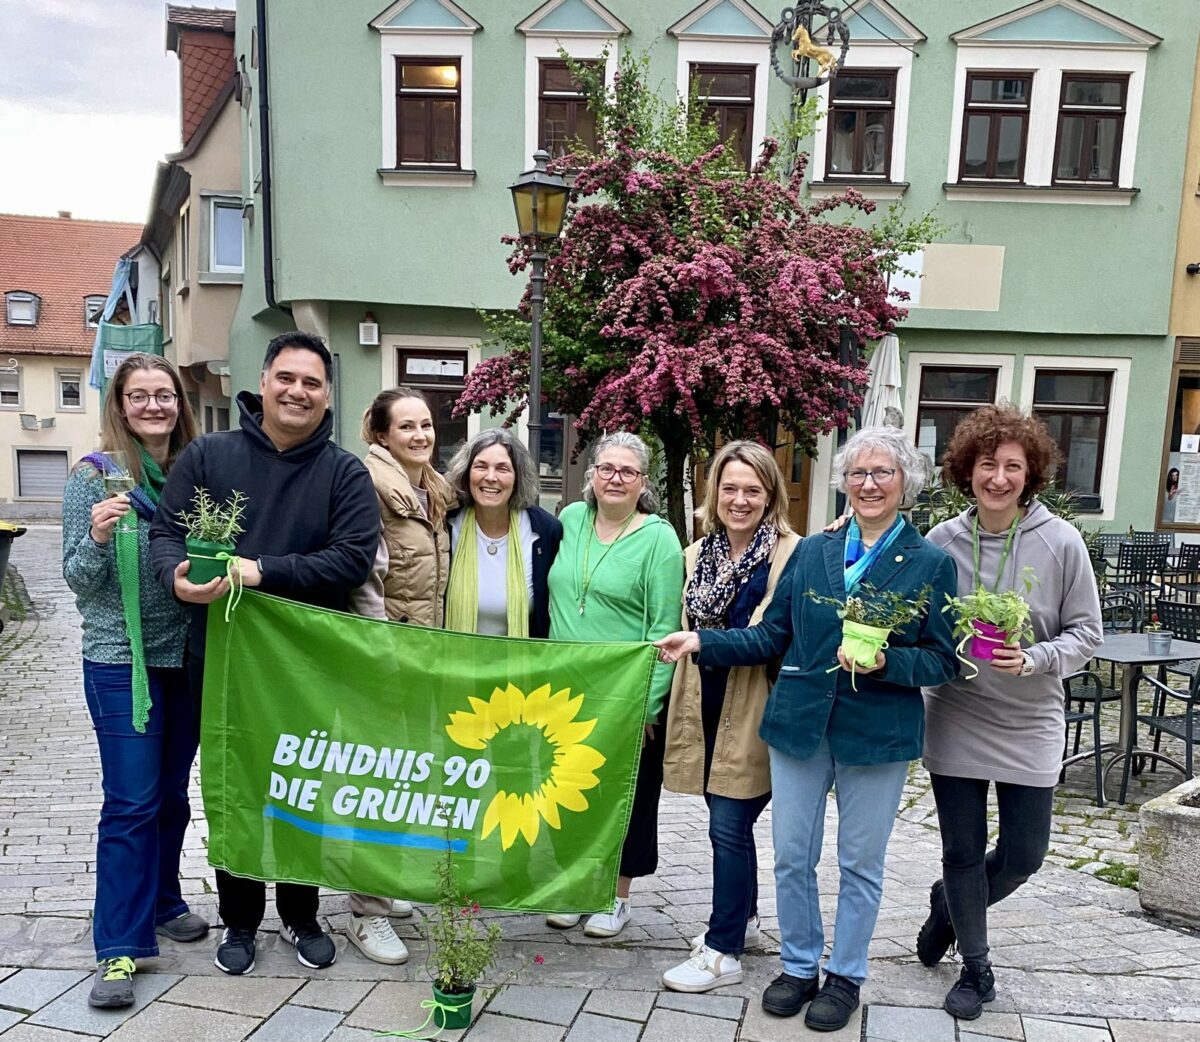 Die unten genannten Personen mit einem grünen "Bündnis 90/Die Grünen" Banner und kleinen Zimmerpflanzen als Geschenk für den Orts-Vorstand in den Händen. Alle lachen in die Kamera. 